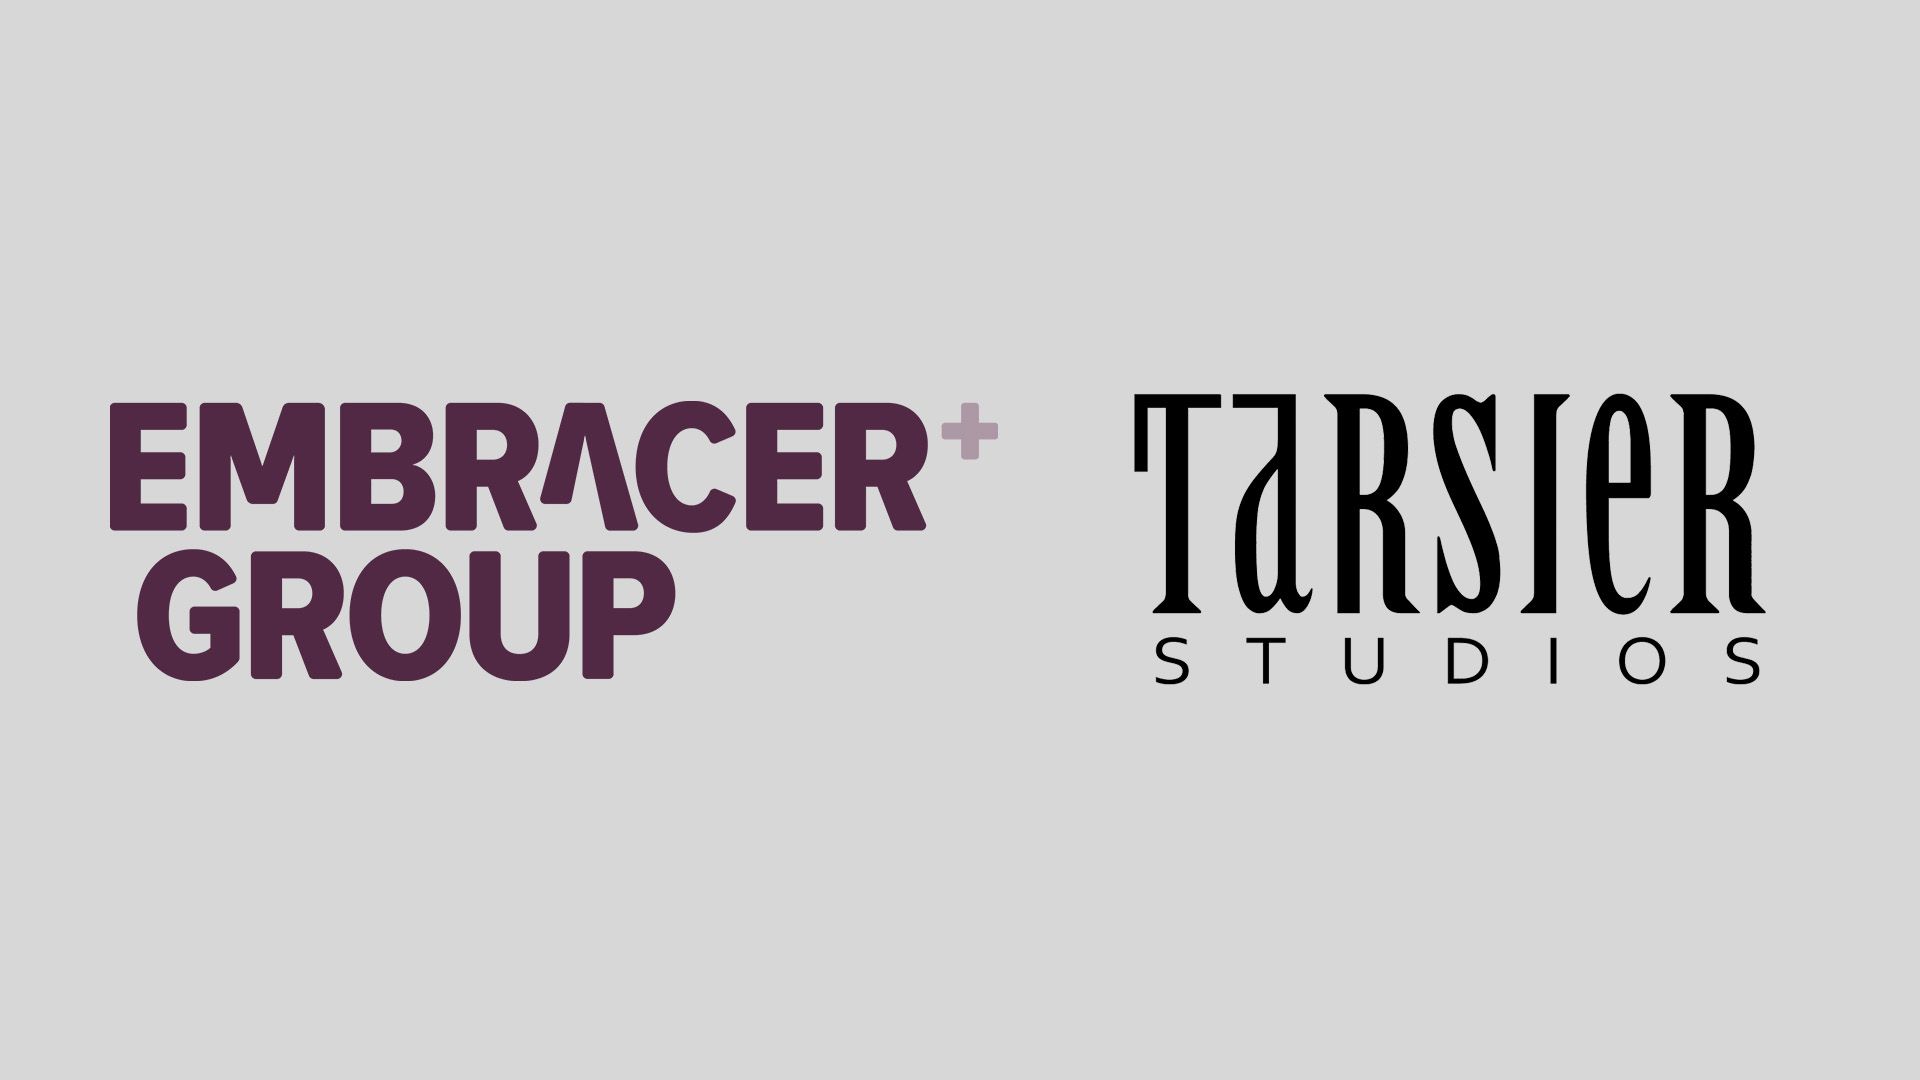 tarsier studios embracer group